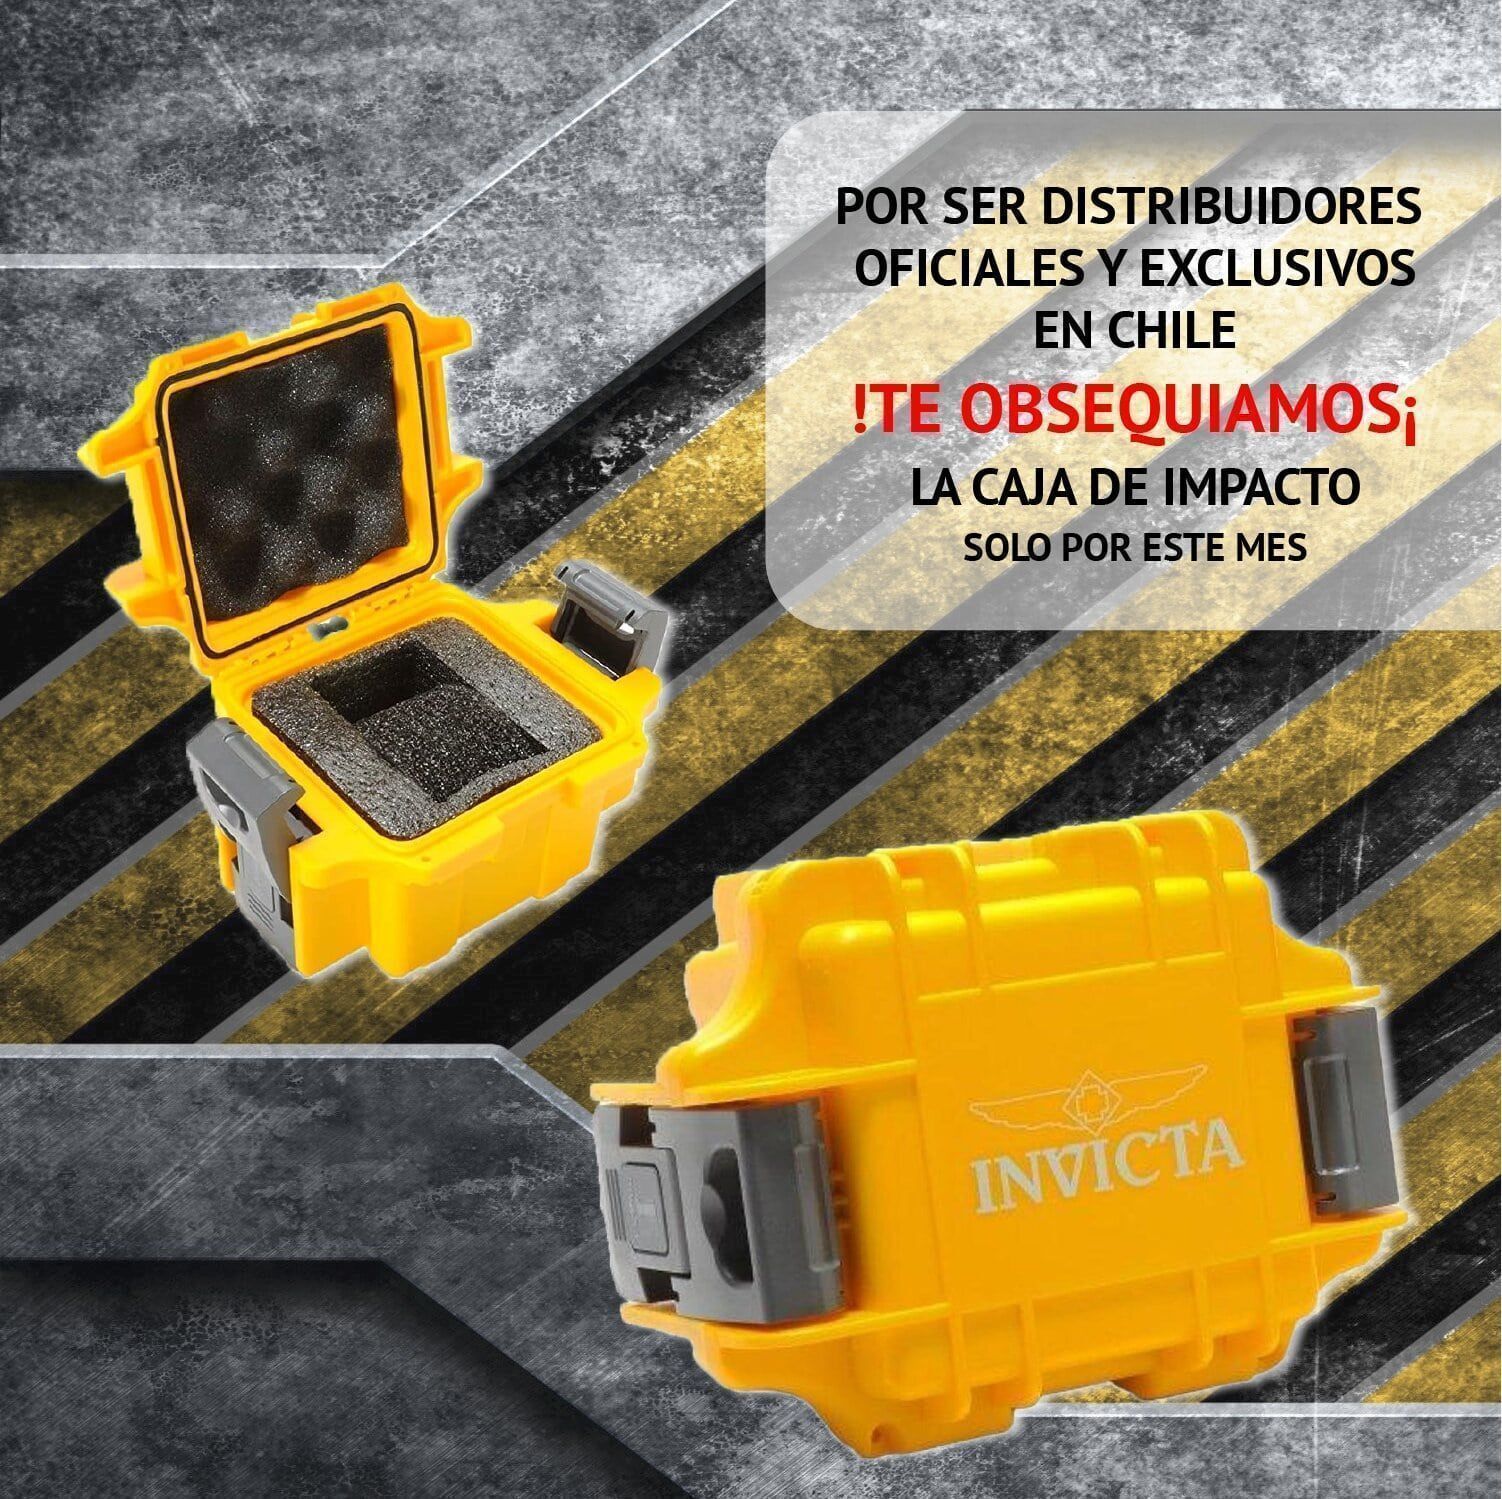 Reloj Invicta Pro Diver 8927ob – Invicta Chile